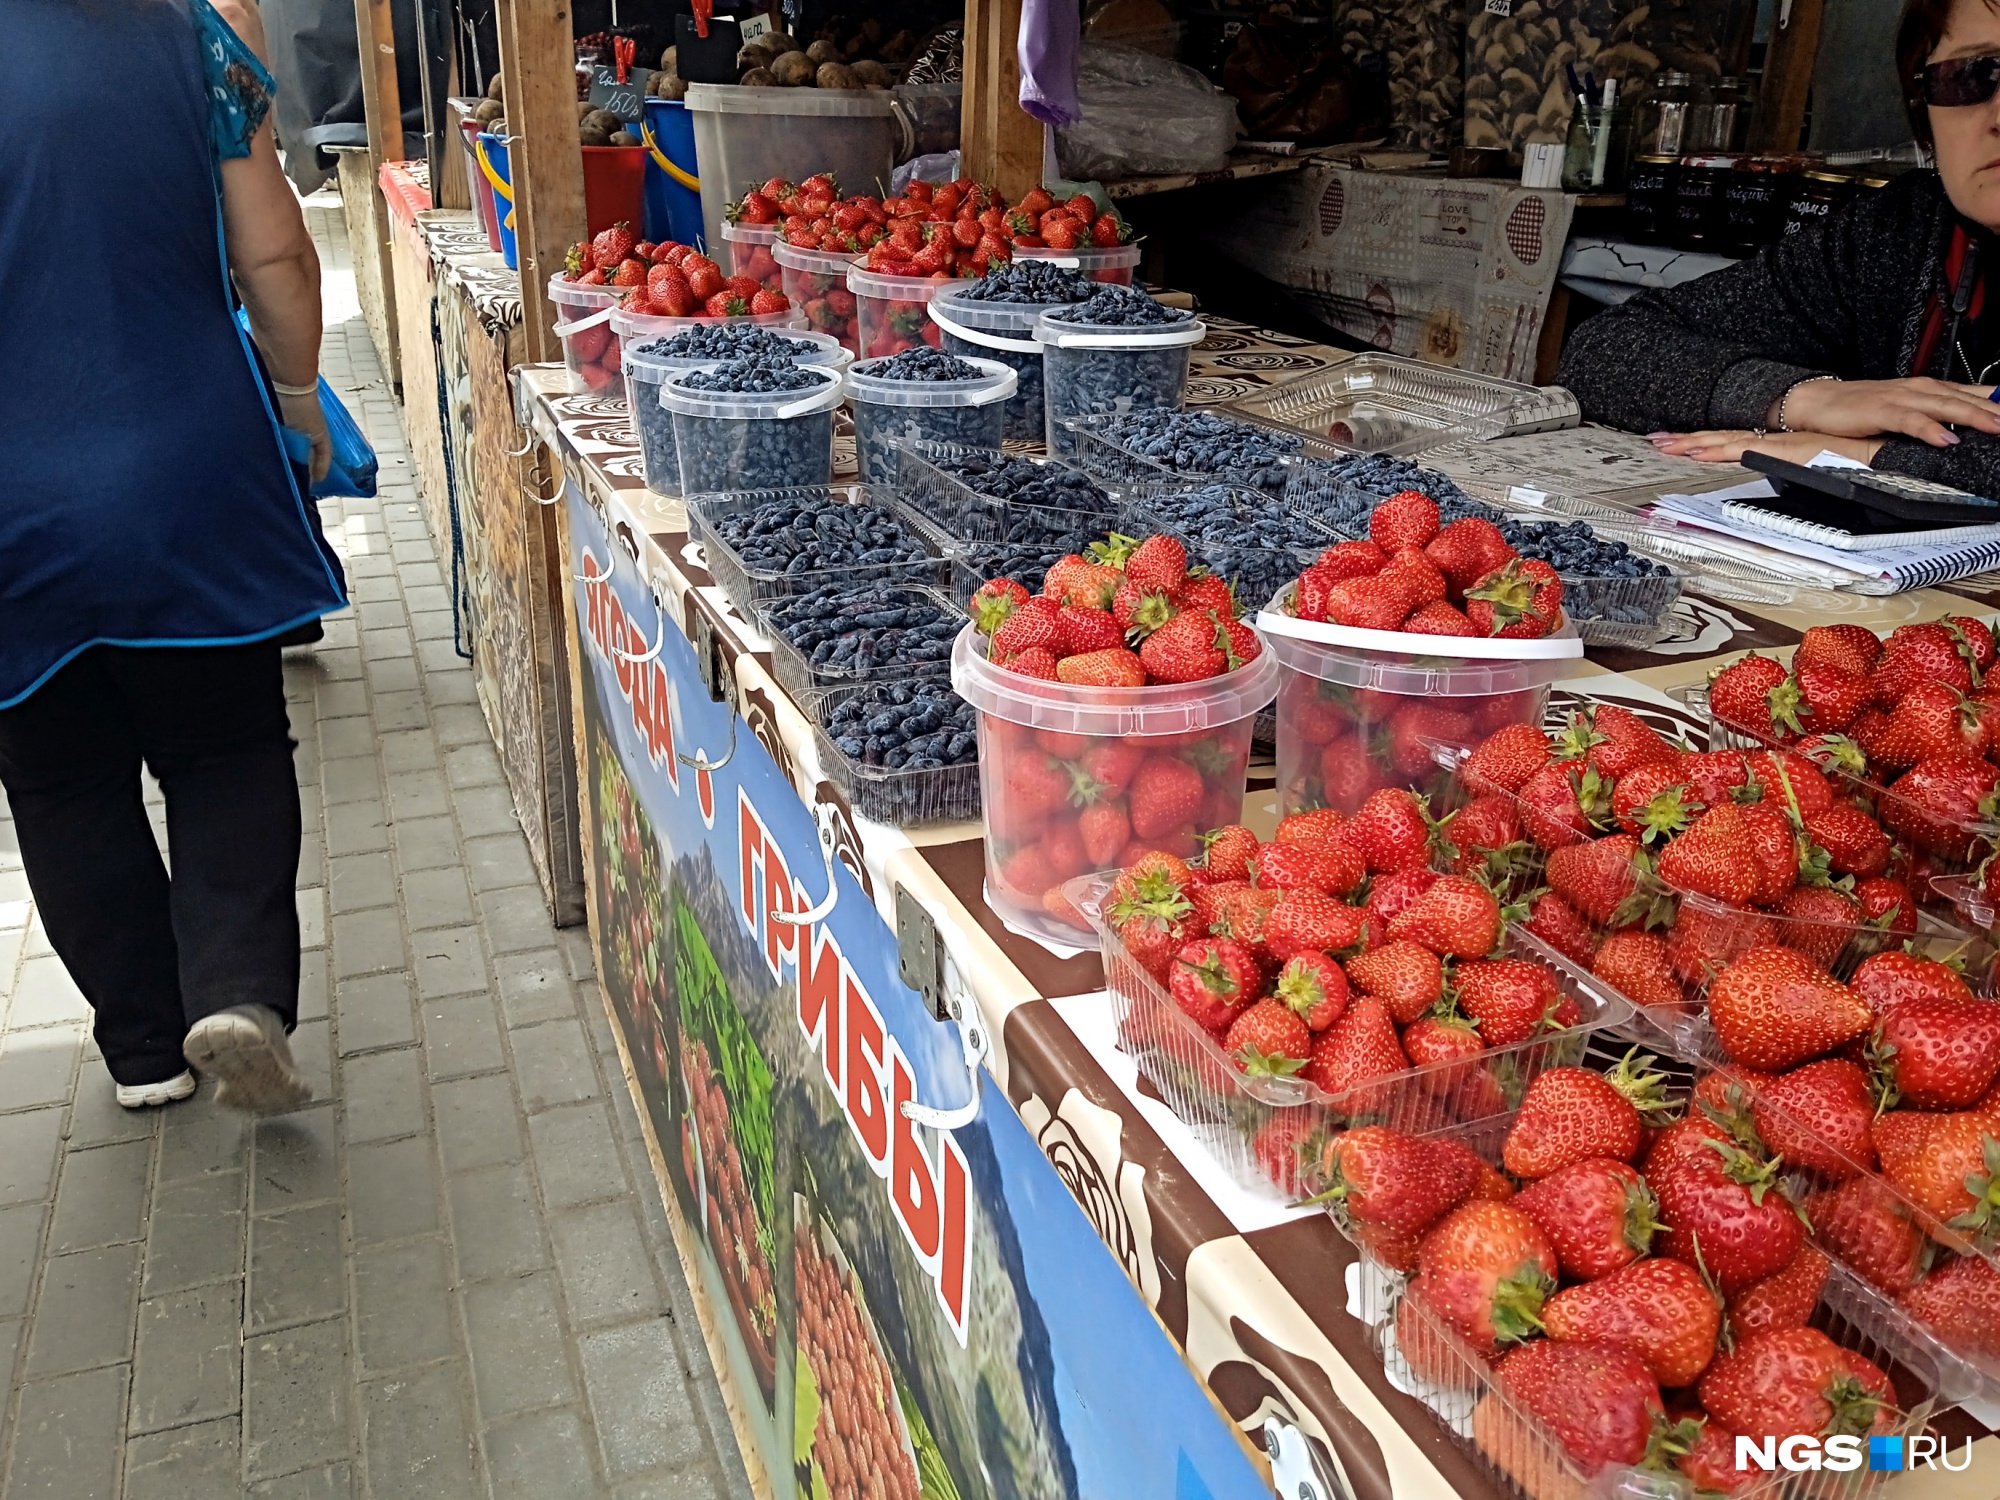 Кубанская клубника, бакинская черешня и жимолость из Барабинска — почем ягода у уличных торговцев